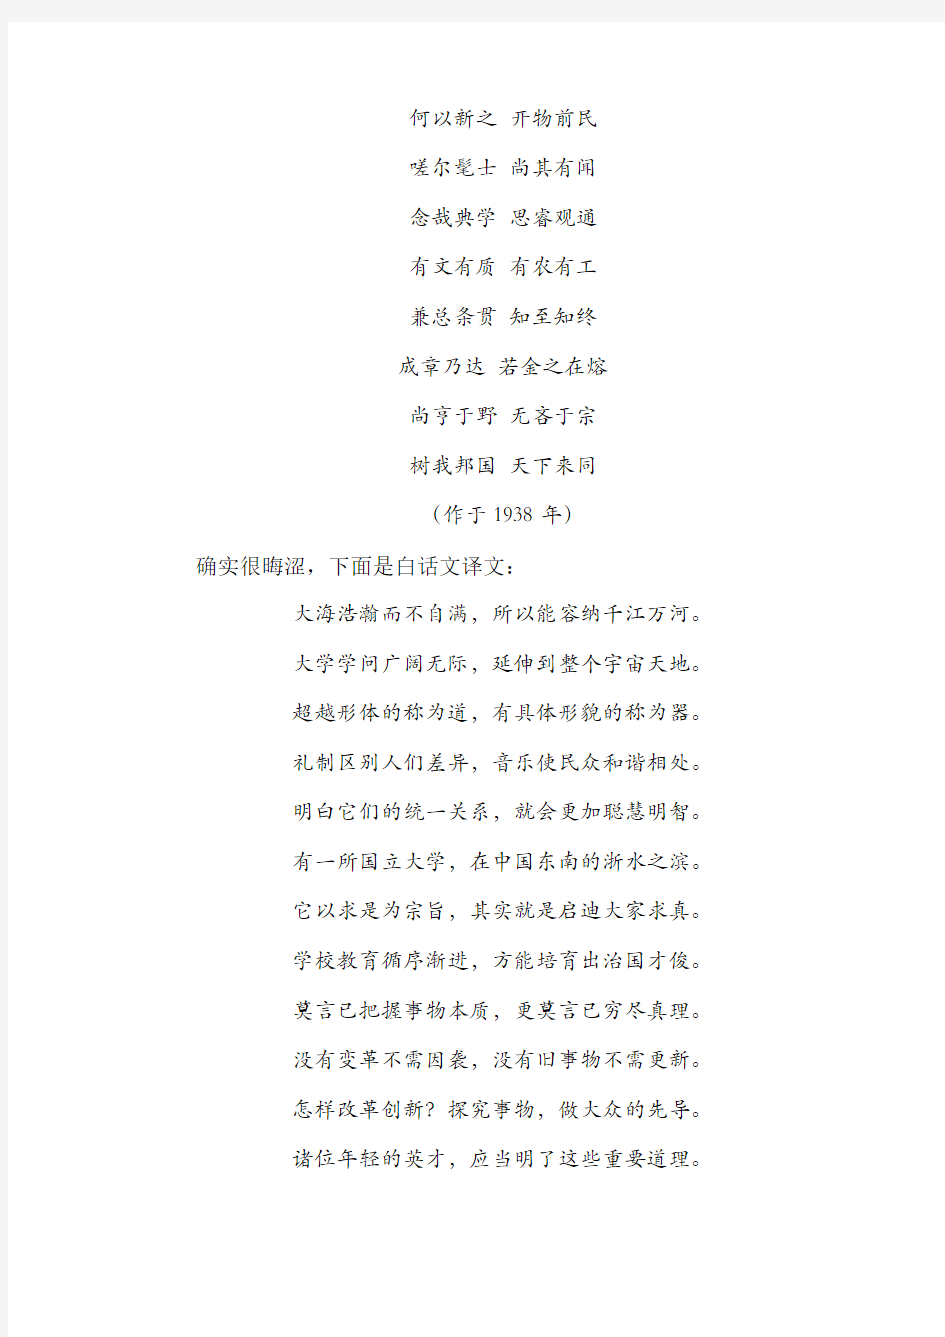 中国大学古典校歌的启示